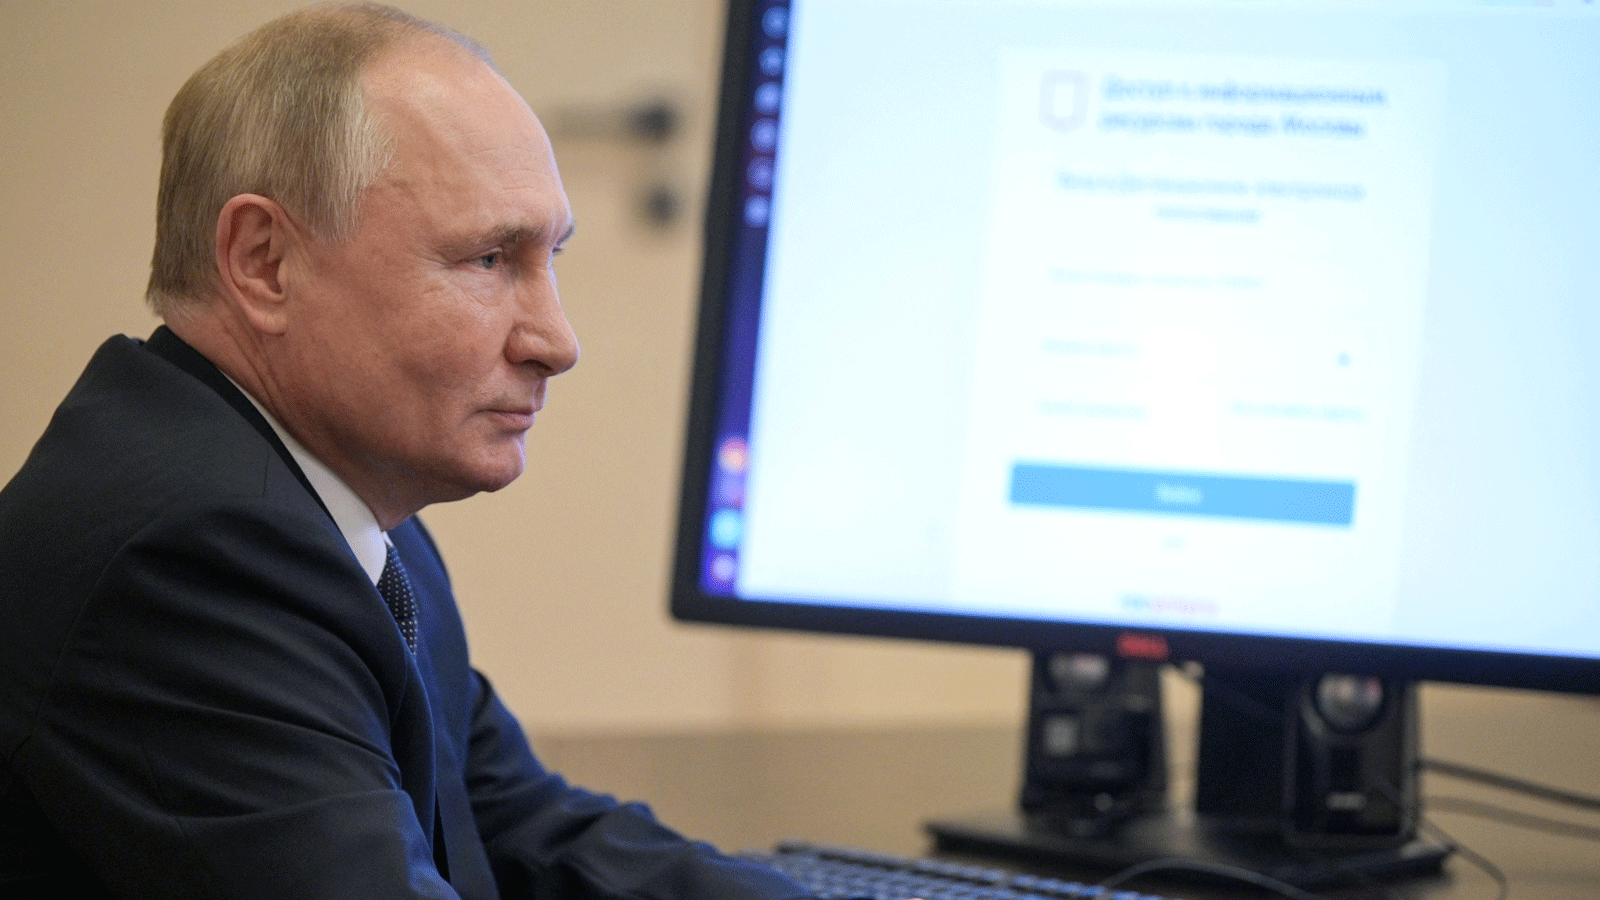 الرئيس فلاديمير بوتين صوّت عبر الإنترنت لأول مرة في انتخابات روسية، تُجرى على مدى ثلاثة أيام